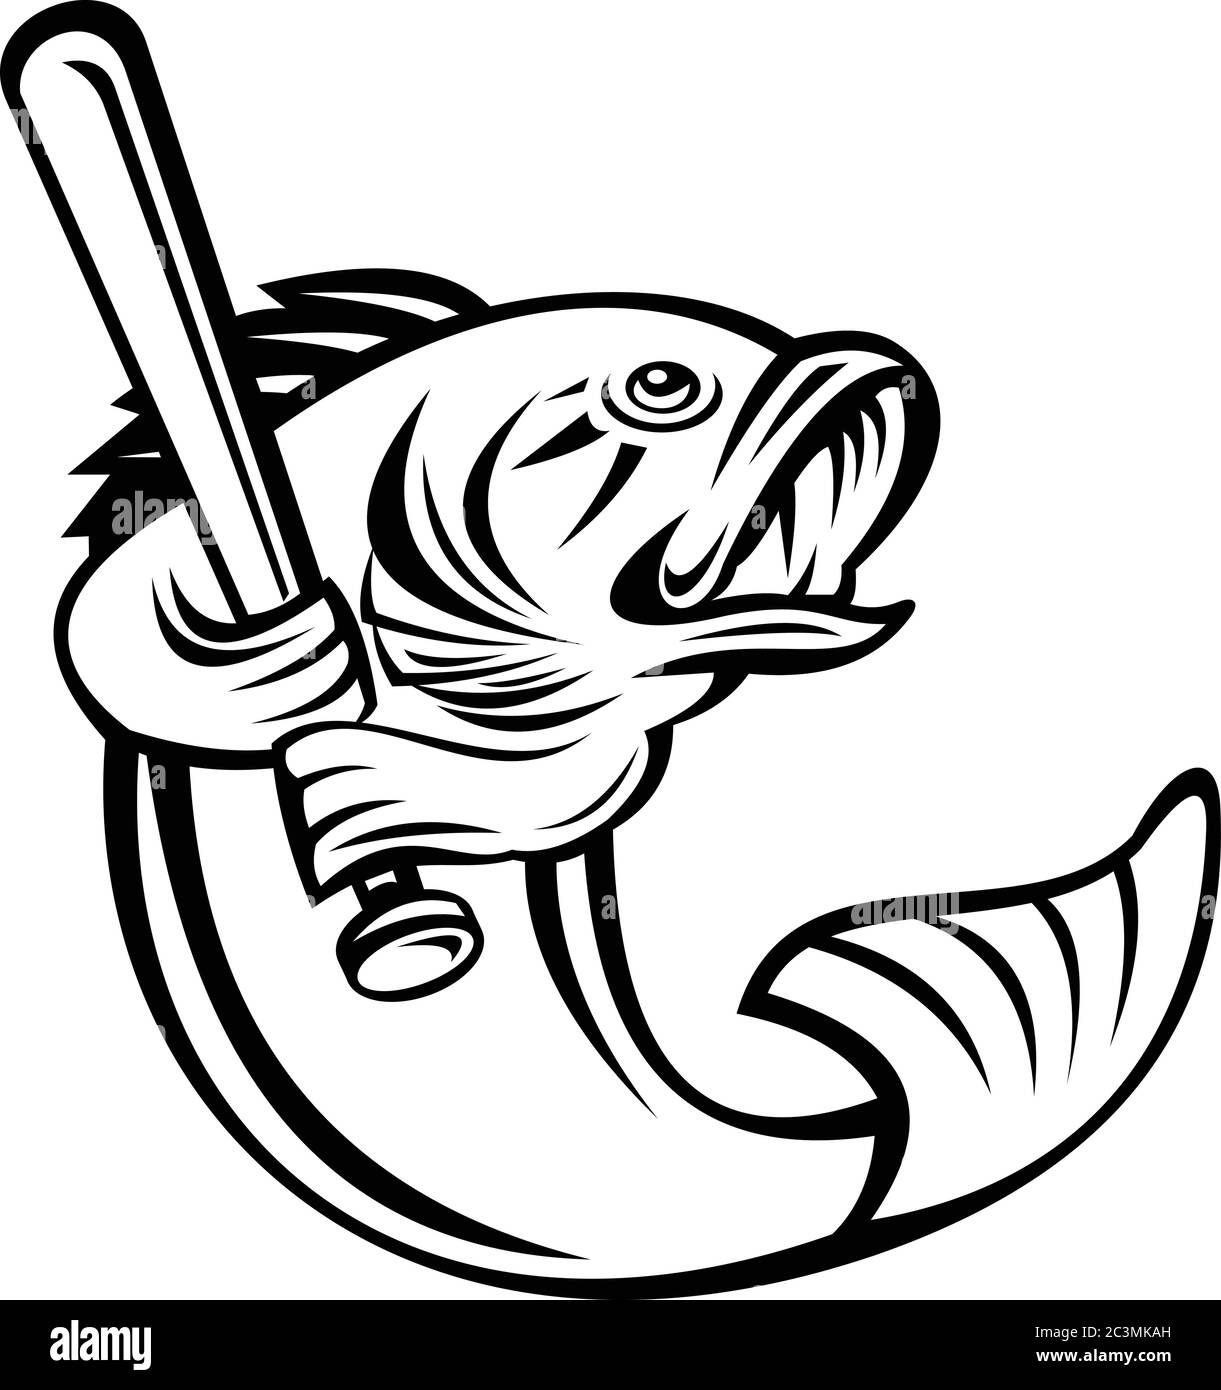 Illustrazione di un basso di largemouth, specie di basso nero e un carnivoro gamefish d'acqua dolce, come giocatore di baseball battendo con pipistrello su backgr isolato Illustrazione Vettoriale